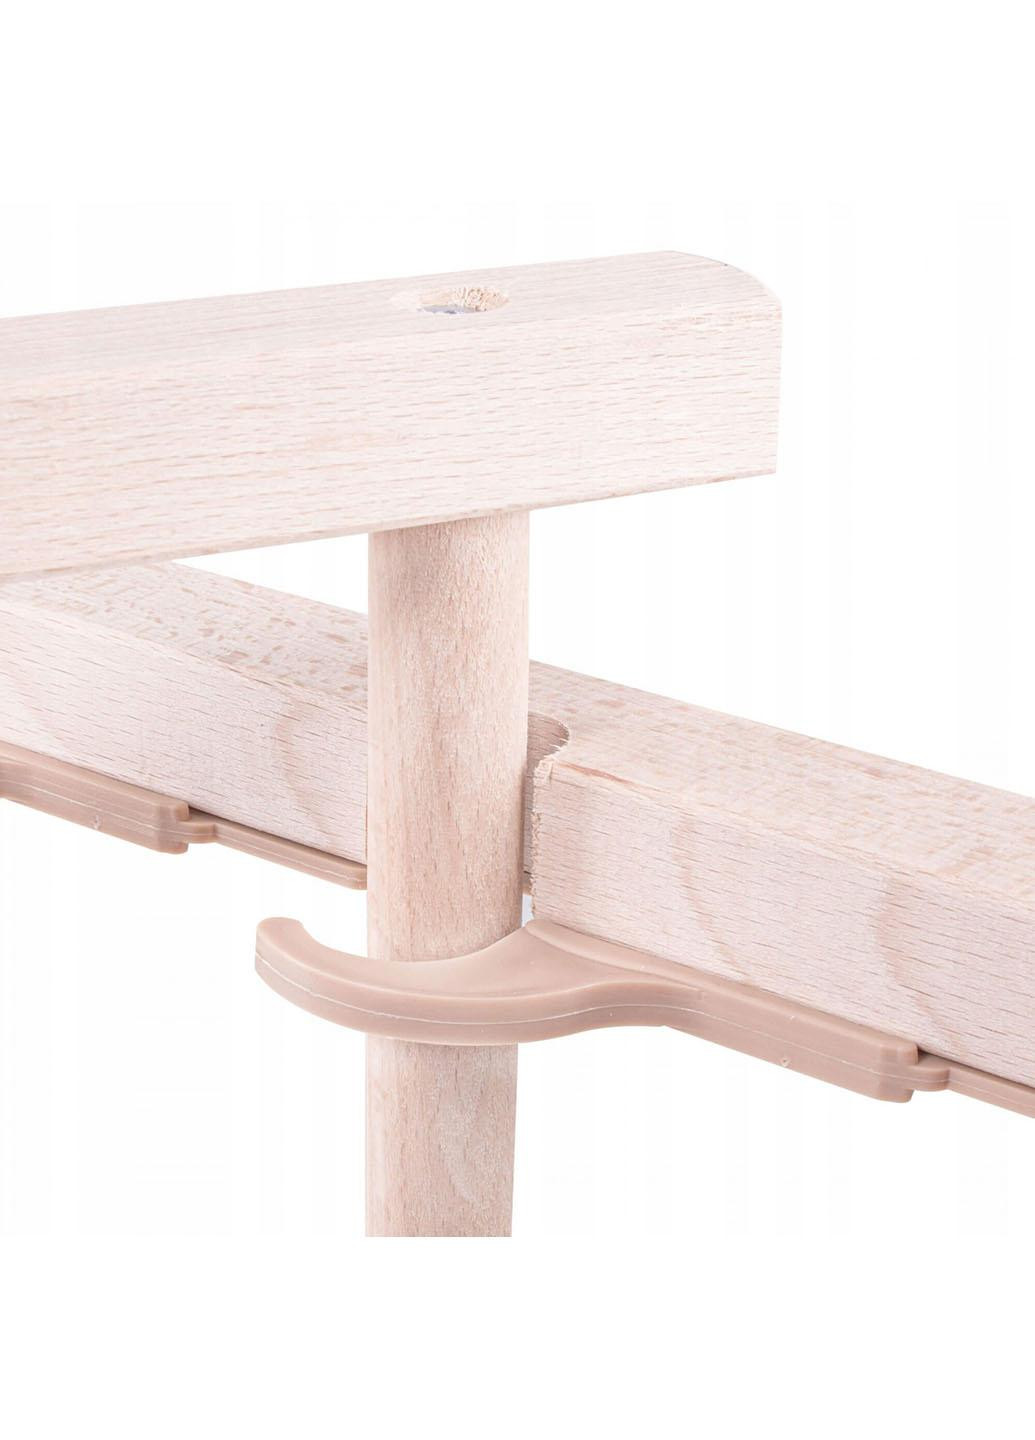 Шезлонг (кресло-лежак) деревянный для пляжа, террасы и сада DC0001 WHRD Springos (258354733)